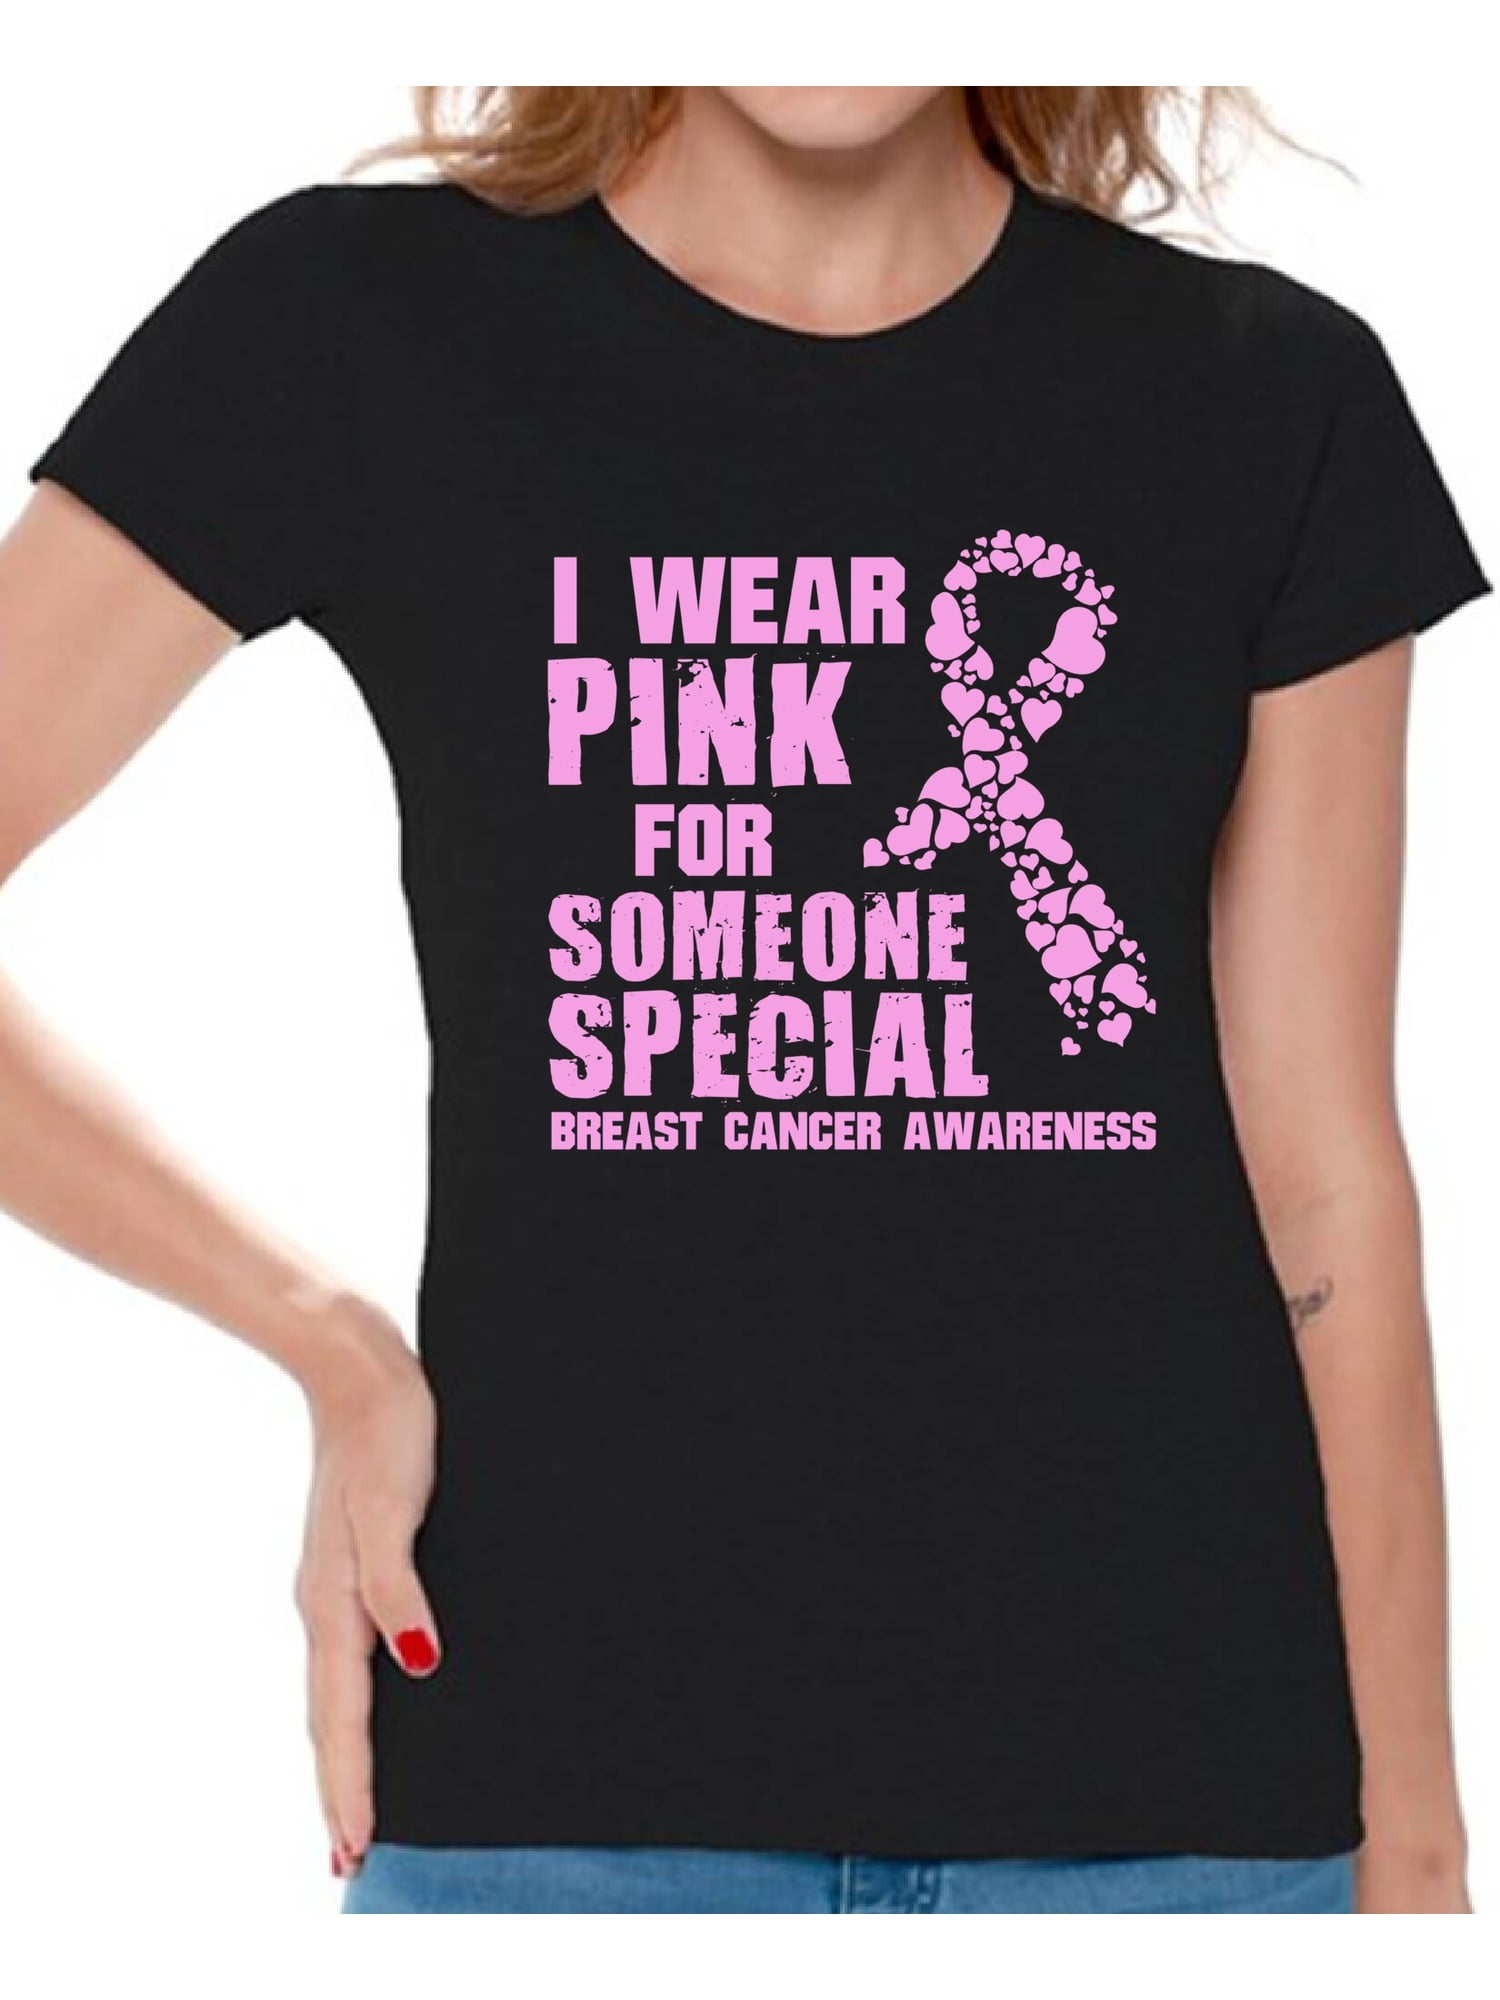 Cancer Awareness Shirt Cancer Shirt Pink Ribbon Shirt Cancer Support Shirt Cancer Support Breast Cancer Shirts for Women Warrior Shirt